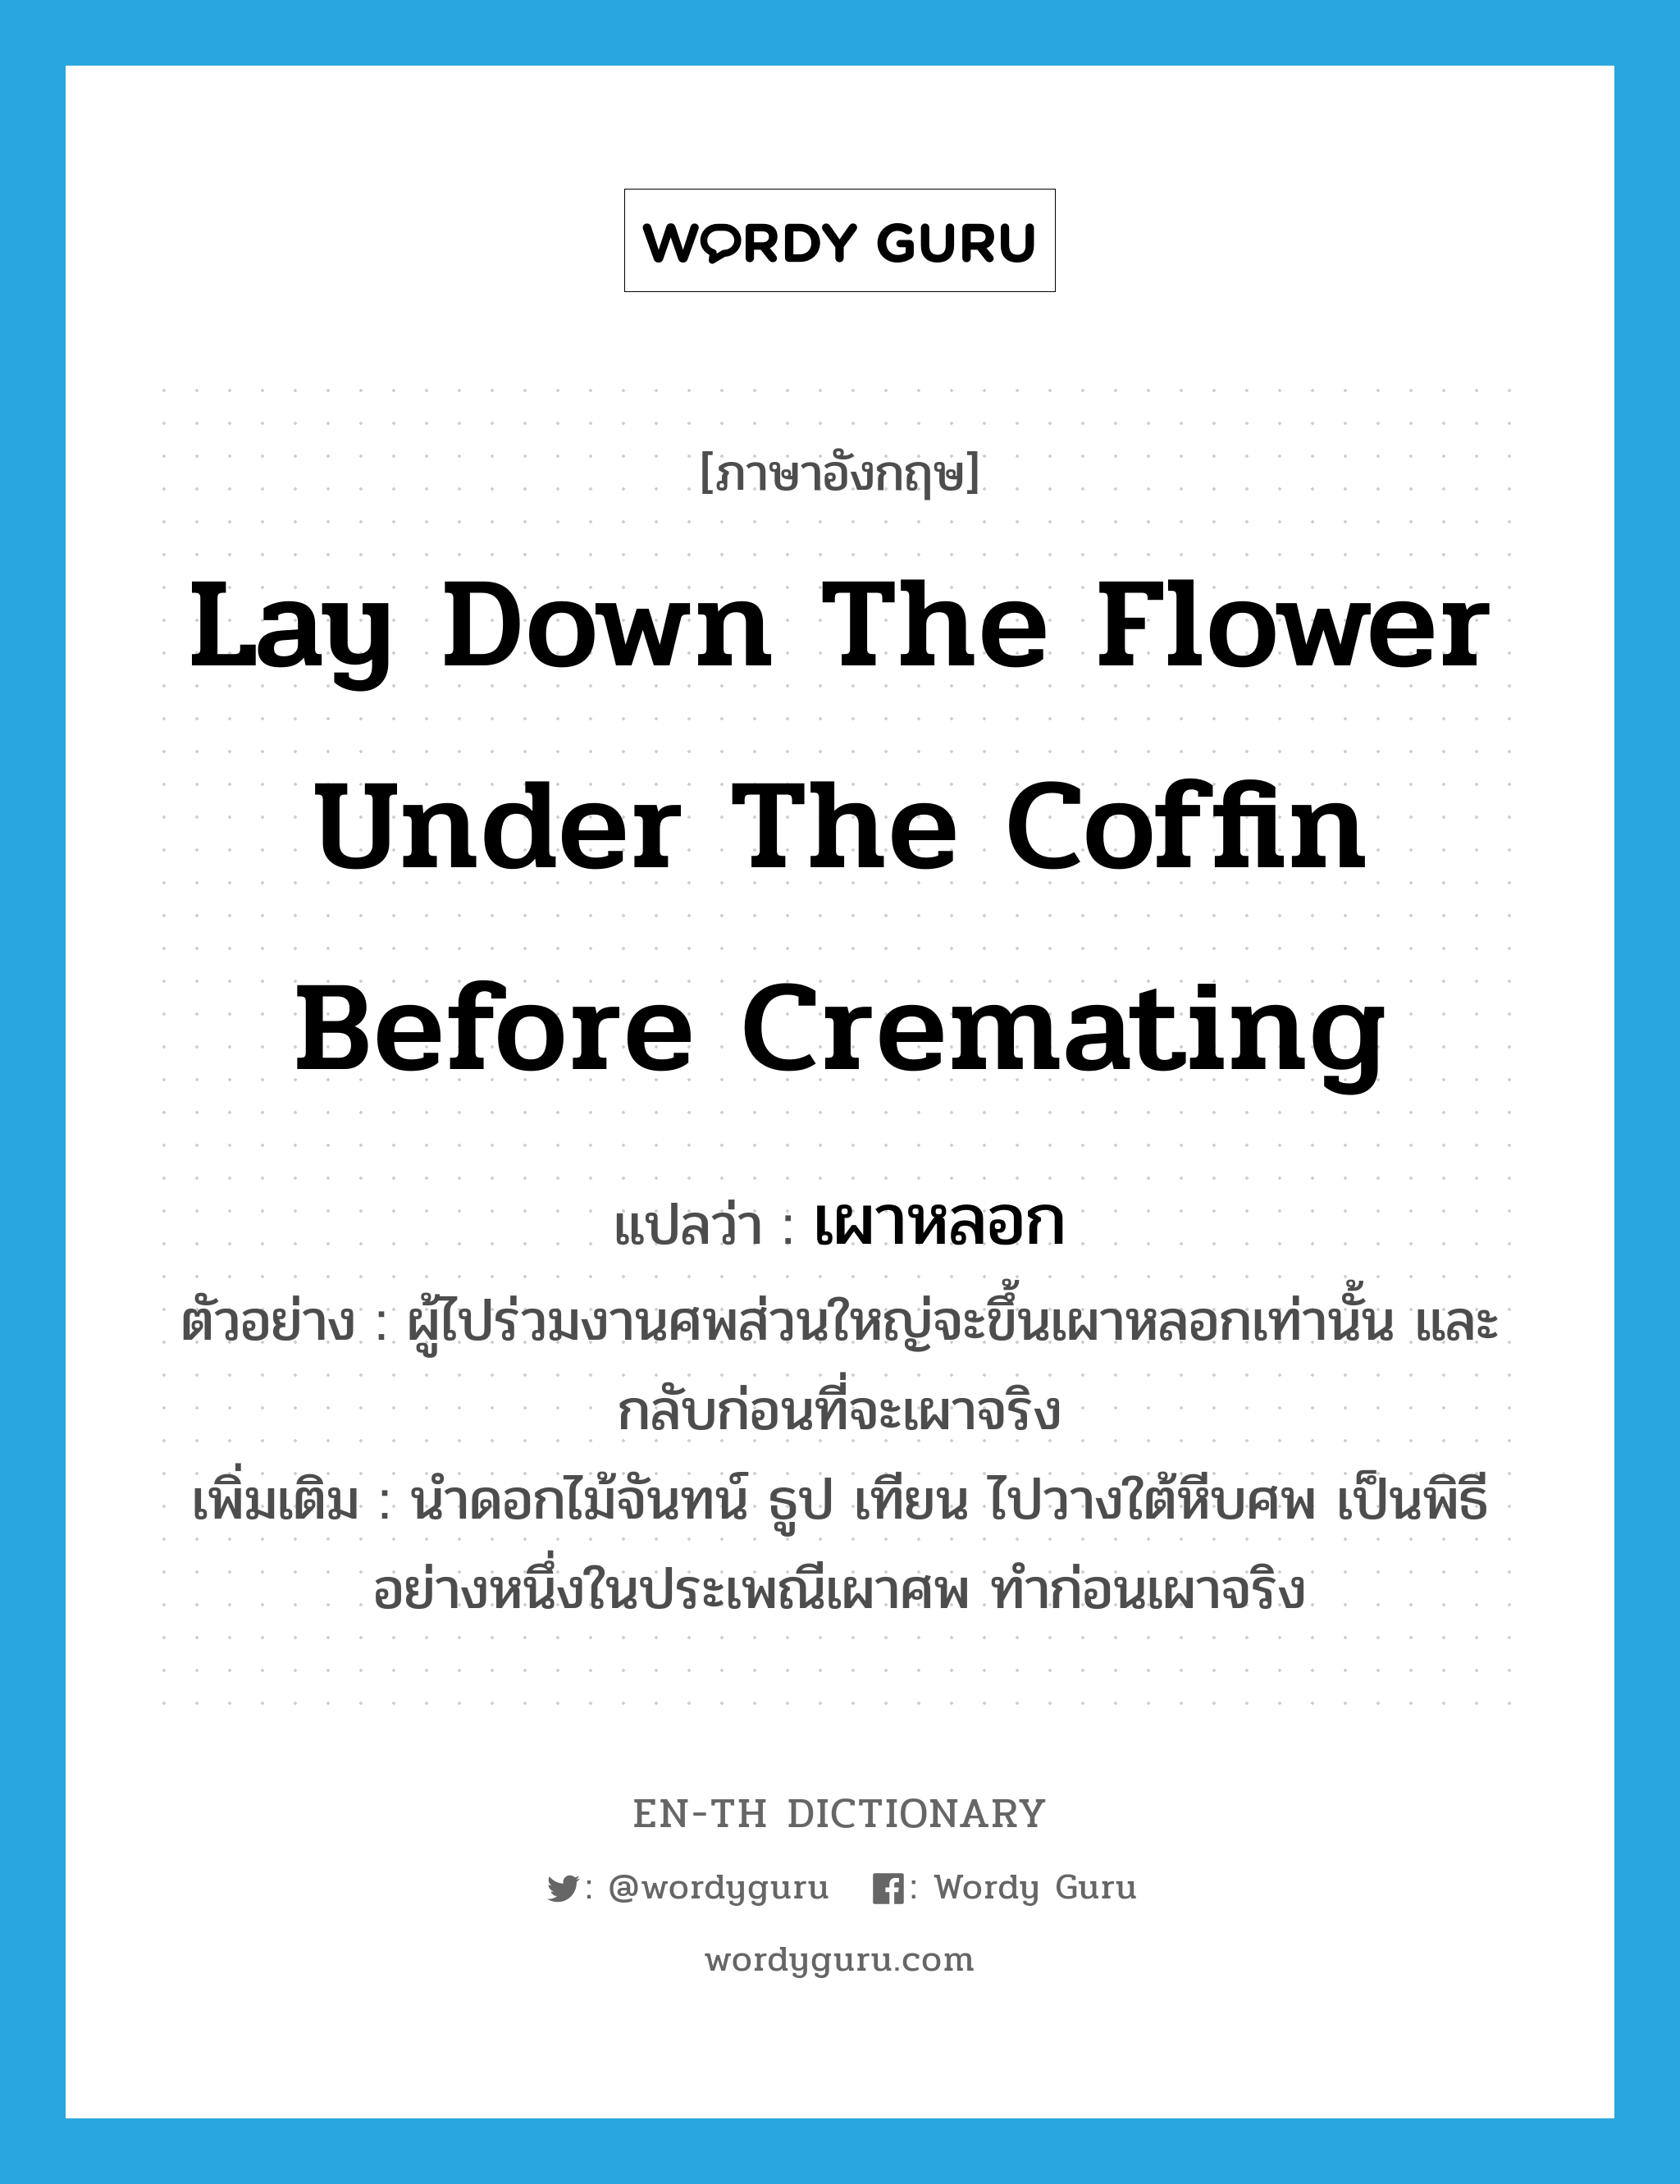 lay down the flower under the coffin before cremating แปลว่า?, คำศัพท์ภาษาอังกฤษ lay down the flower under the coffin before cremating แปลว่า เผาหลอก ประเภท V ตัวอย่าง ผู้ไปร่วมงานศพส่วนใหญ่จะขึ้นเผาหลอกเท่านั้น และกลับก่อนที่จะเผาจริง เพิ่มเติม นำดอกไม้จันทน์ ธูป เทียน ไปวางใต้หีบศพ เป็นพิธีอย่างหนึ่งในประเพณีเผาศพ ทำก่อนเผาจริง หมวด V